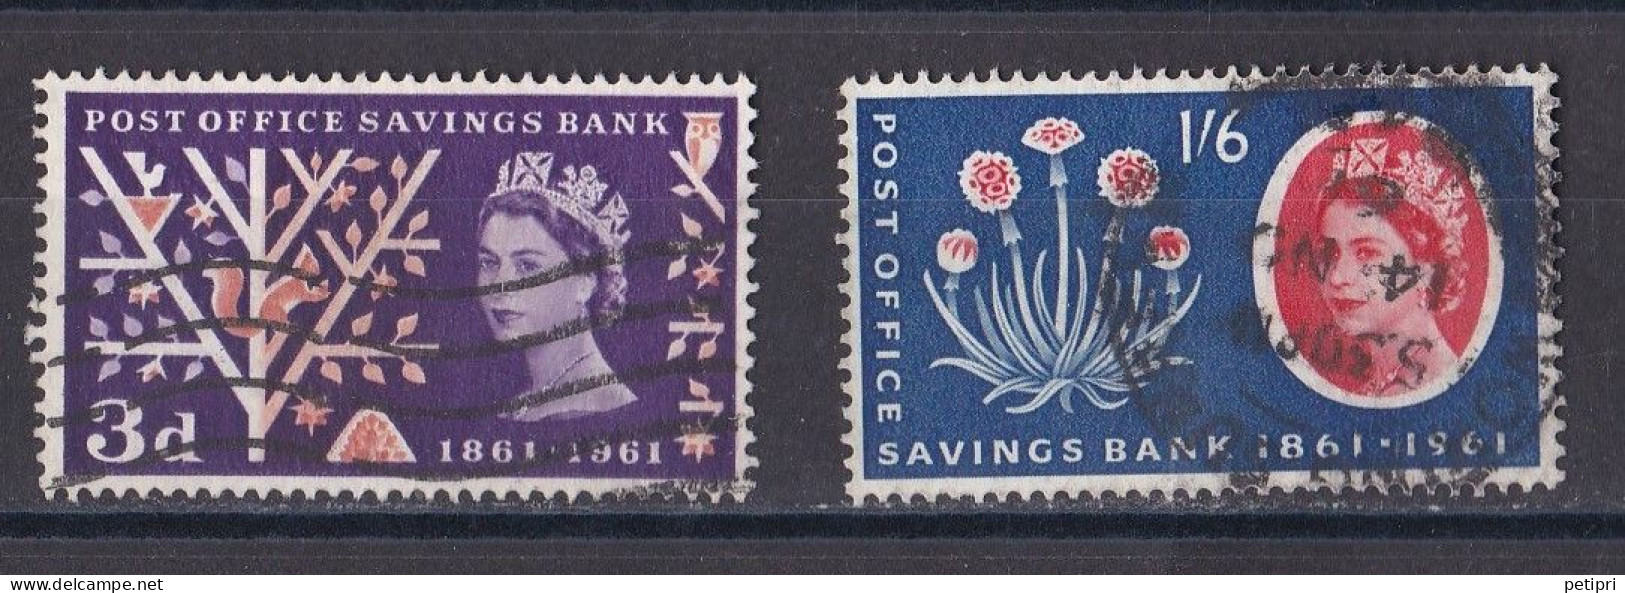 Grande Bretagne - 1952 - 1971 -  Elisabeth II -  Y&T N °  360  Et  361  Oblitérés - Used Stamps